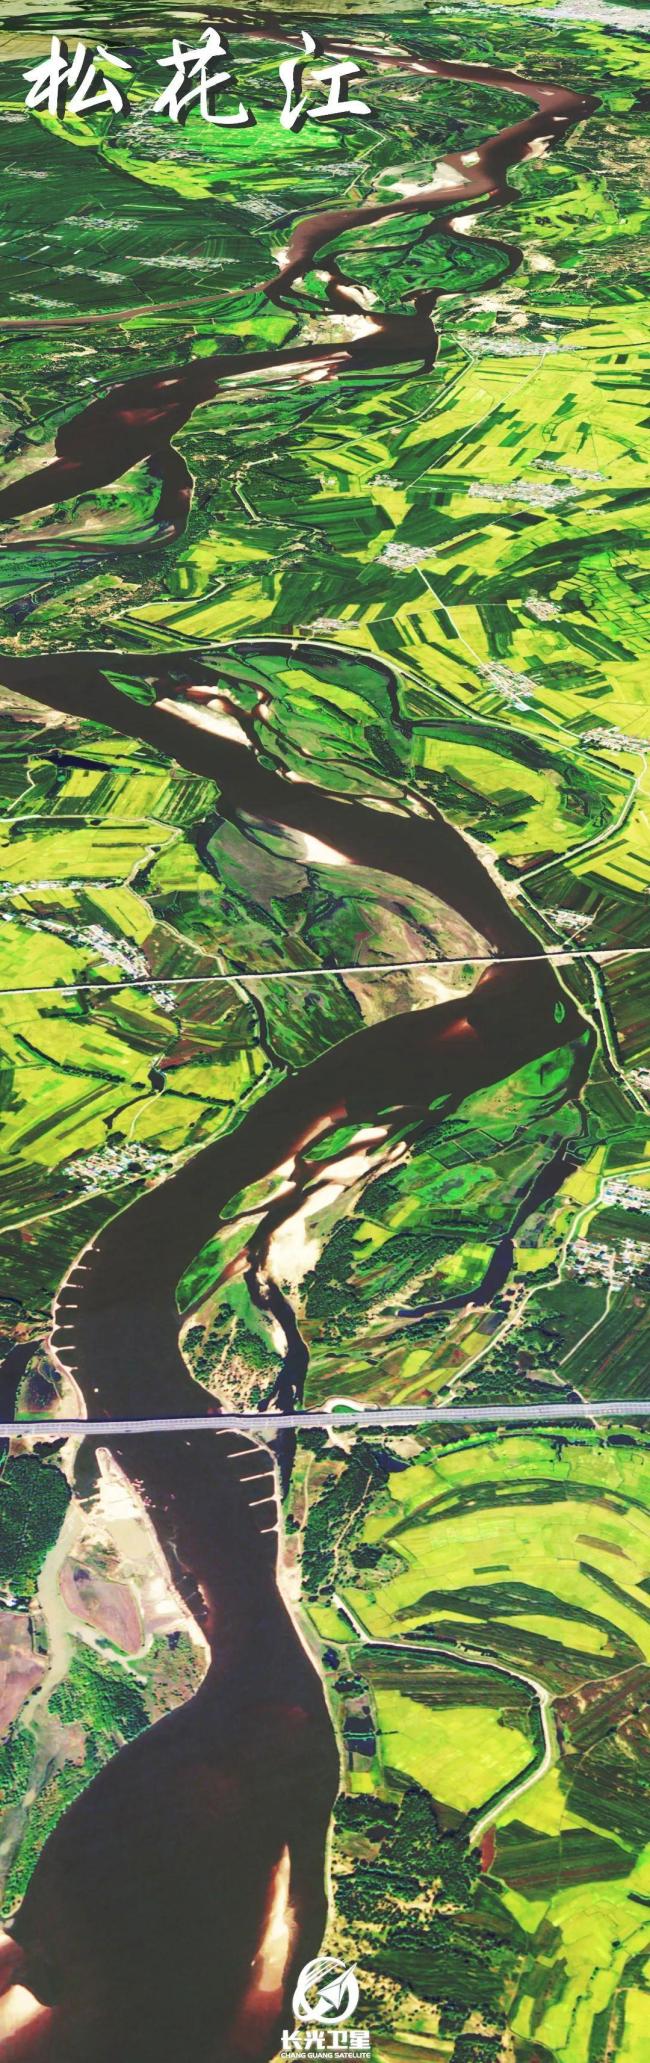 卫星图看威尼斯人备用河流 大地脉络一目了然